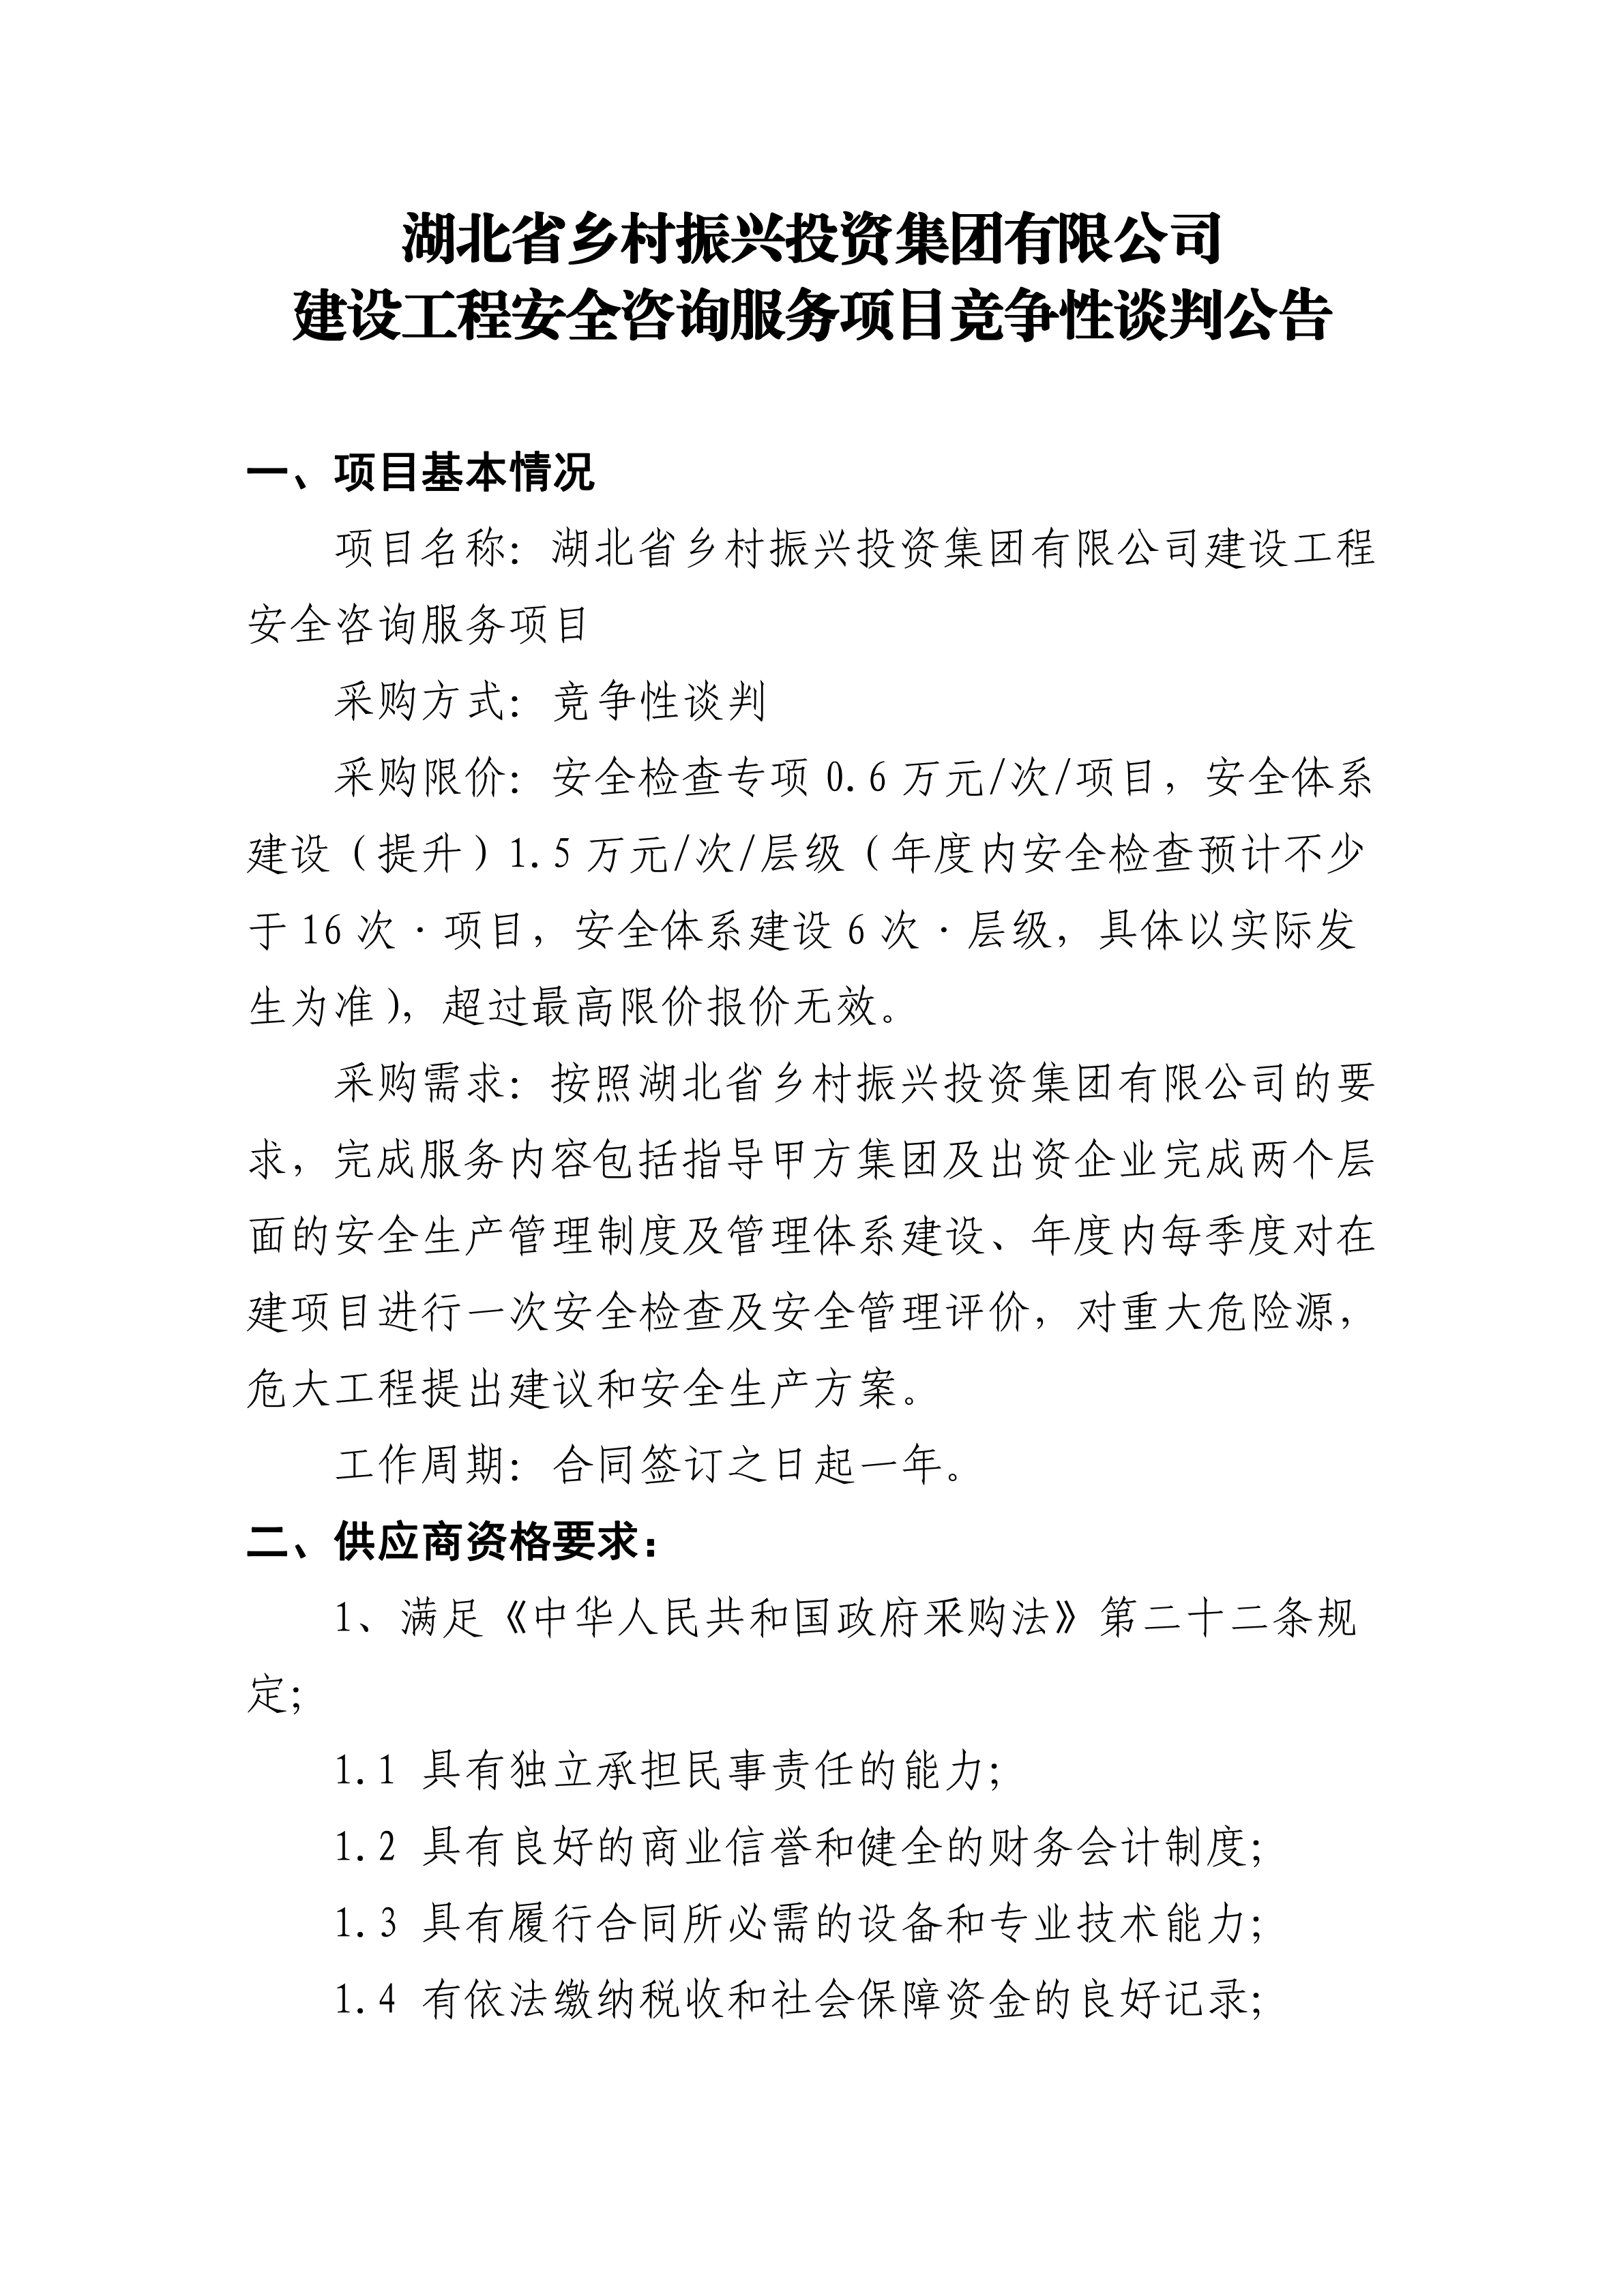 亿搏体育(中国)股份有限公司官网建设工程安全咨询服务项目竞争性谈判公告